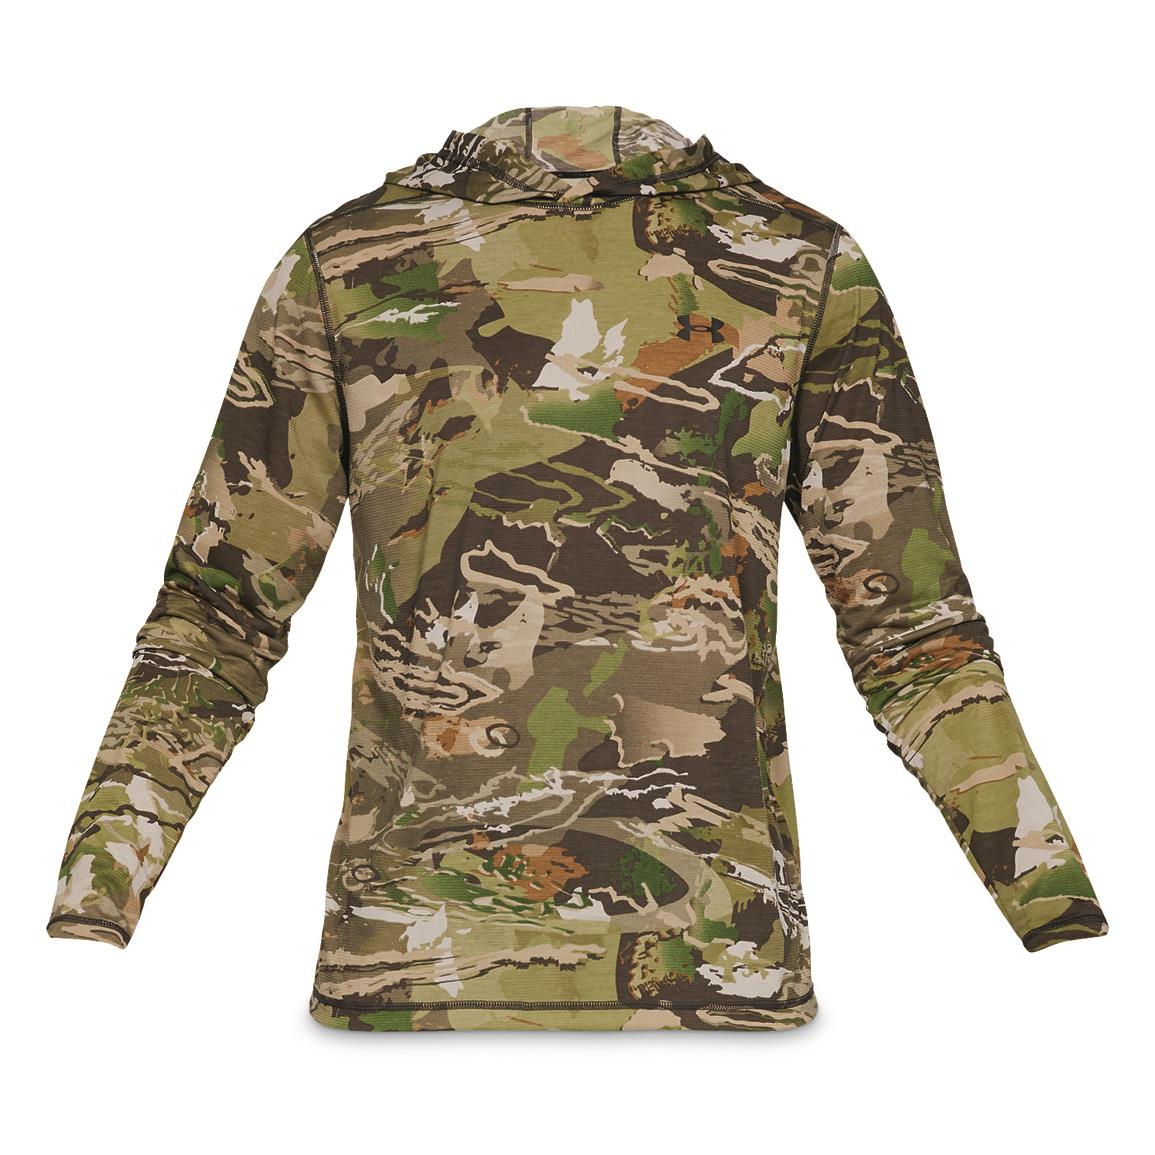 Under Armour Threadborne Early Season Forest Camo Long Sleeve Shirt Sz XL 